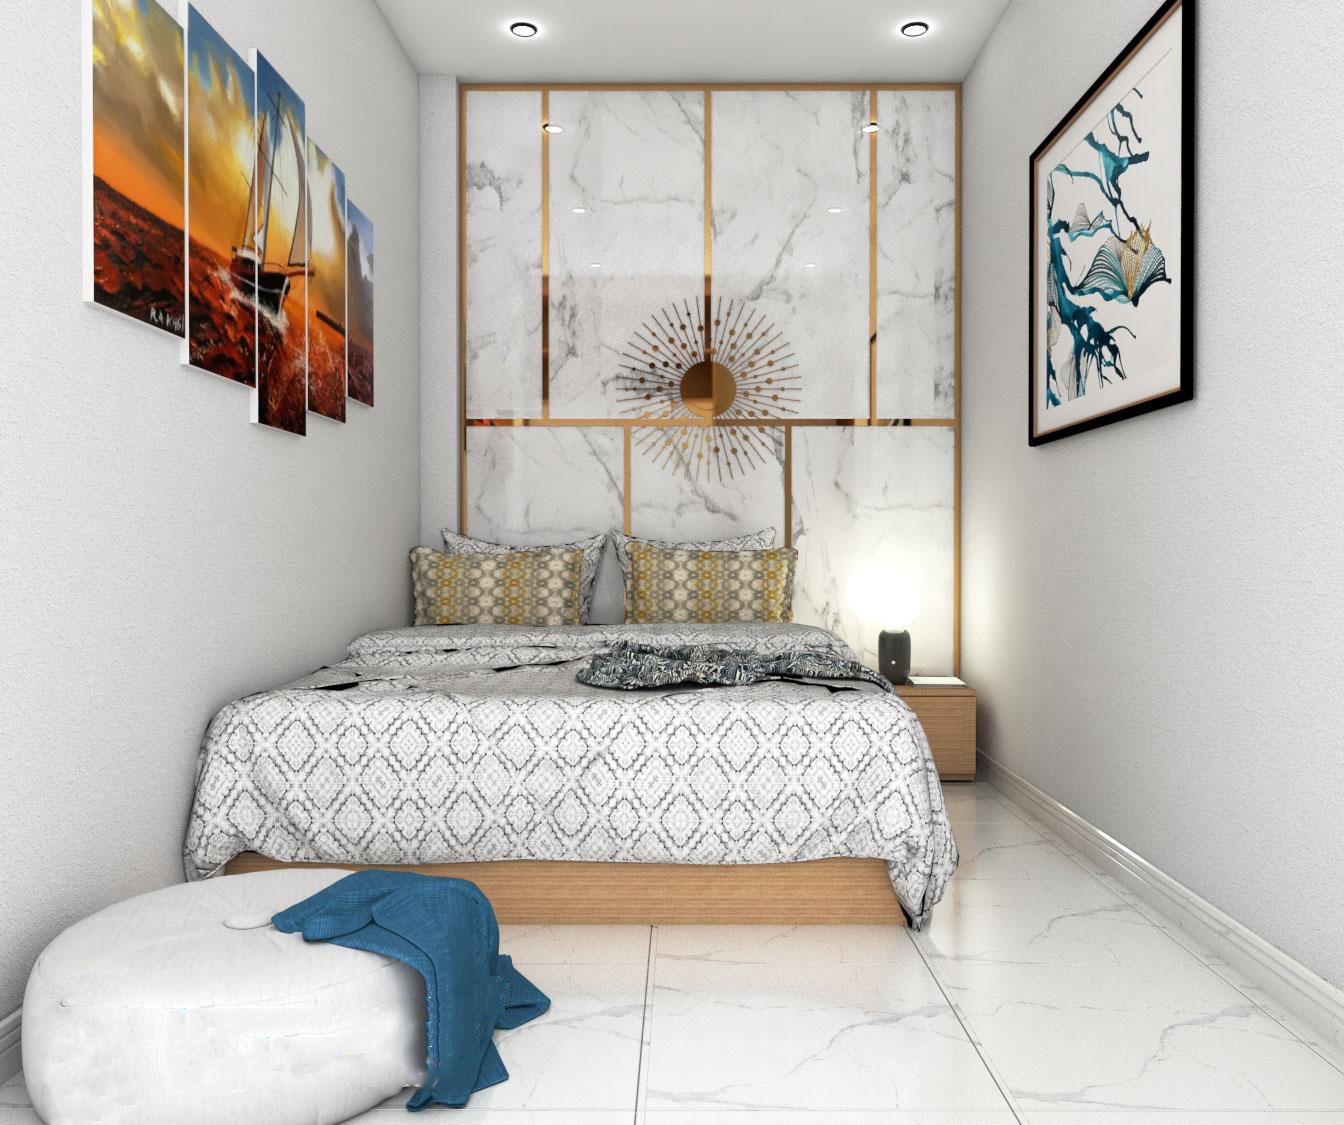 Nội thất gỗ công nghiệp bền đẹp cho phòng ngủ 7m2, phong cách hiện đại